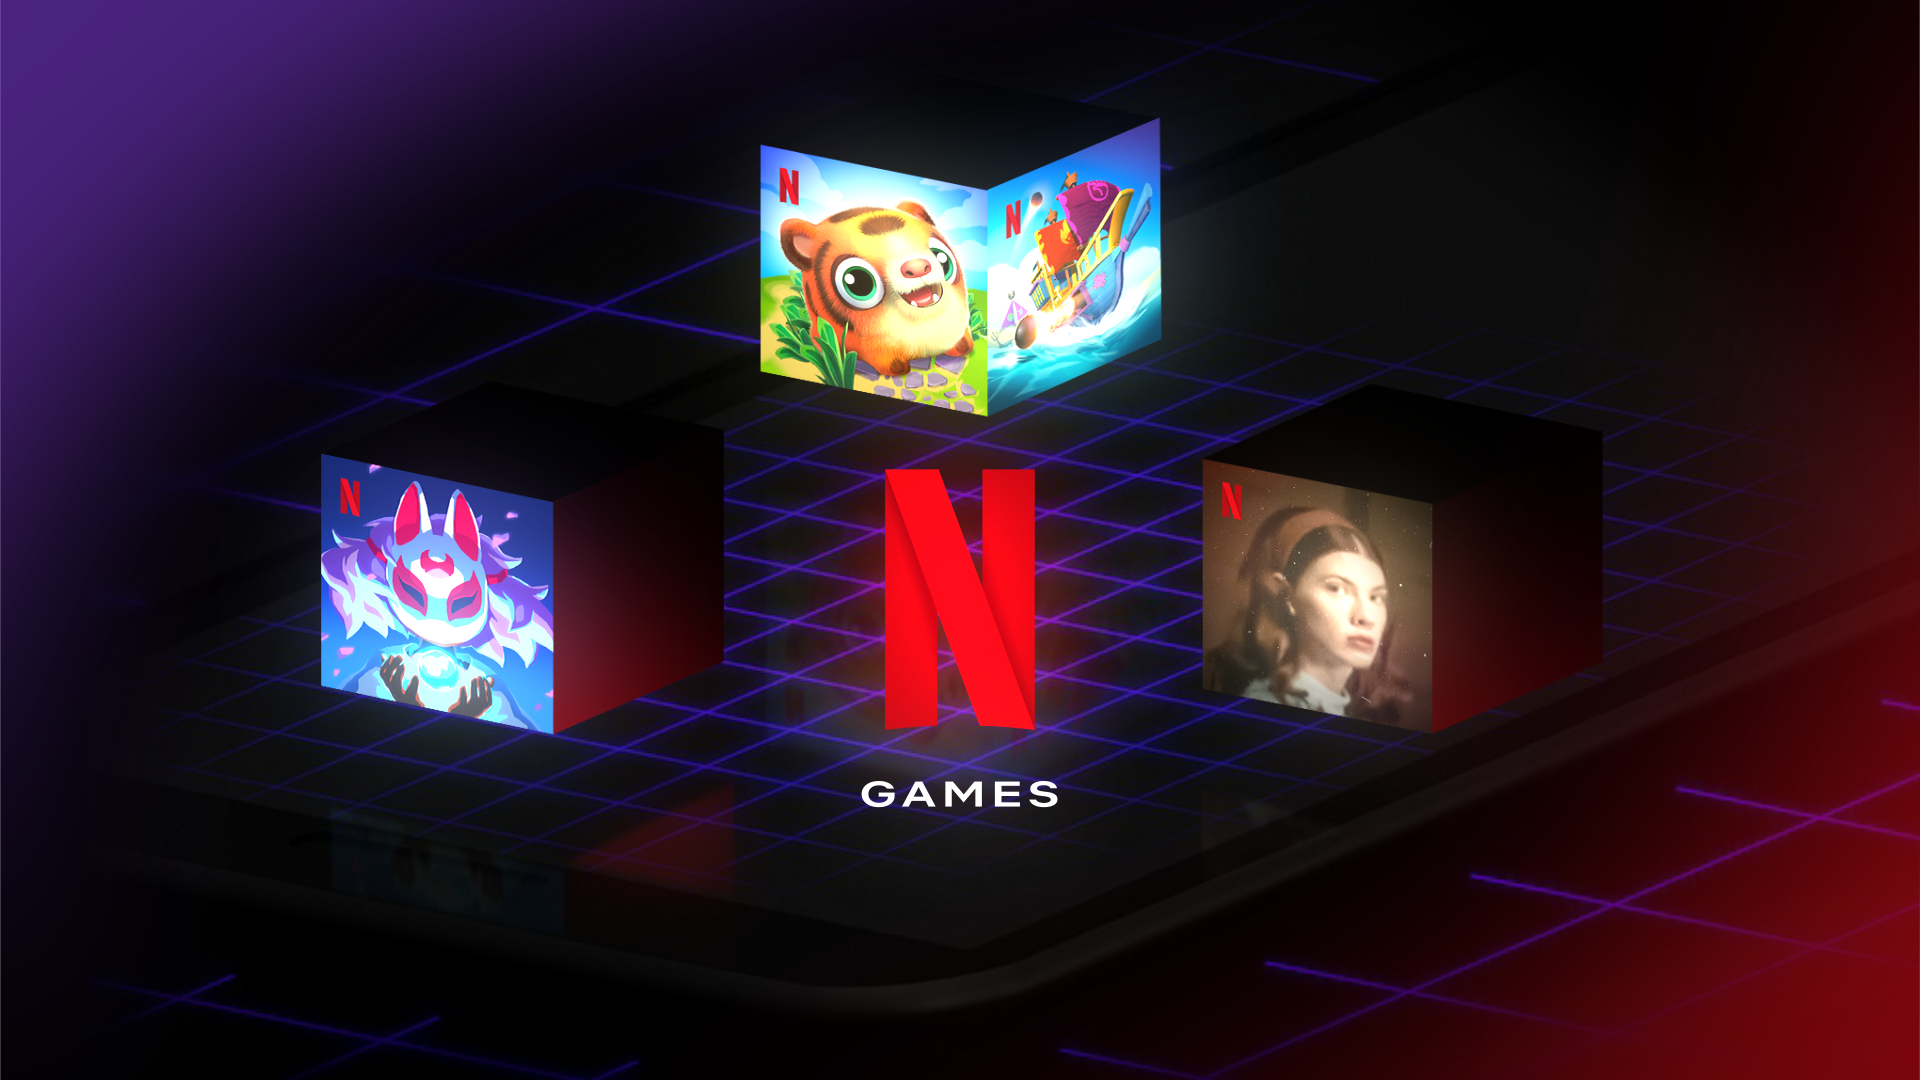 Netflix lança aplicativo de controle para jogar games da